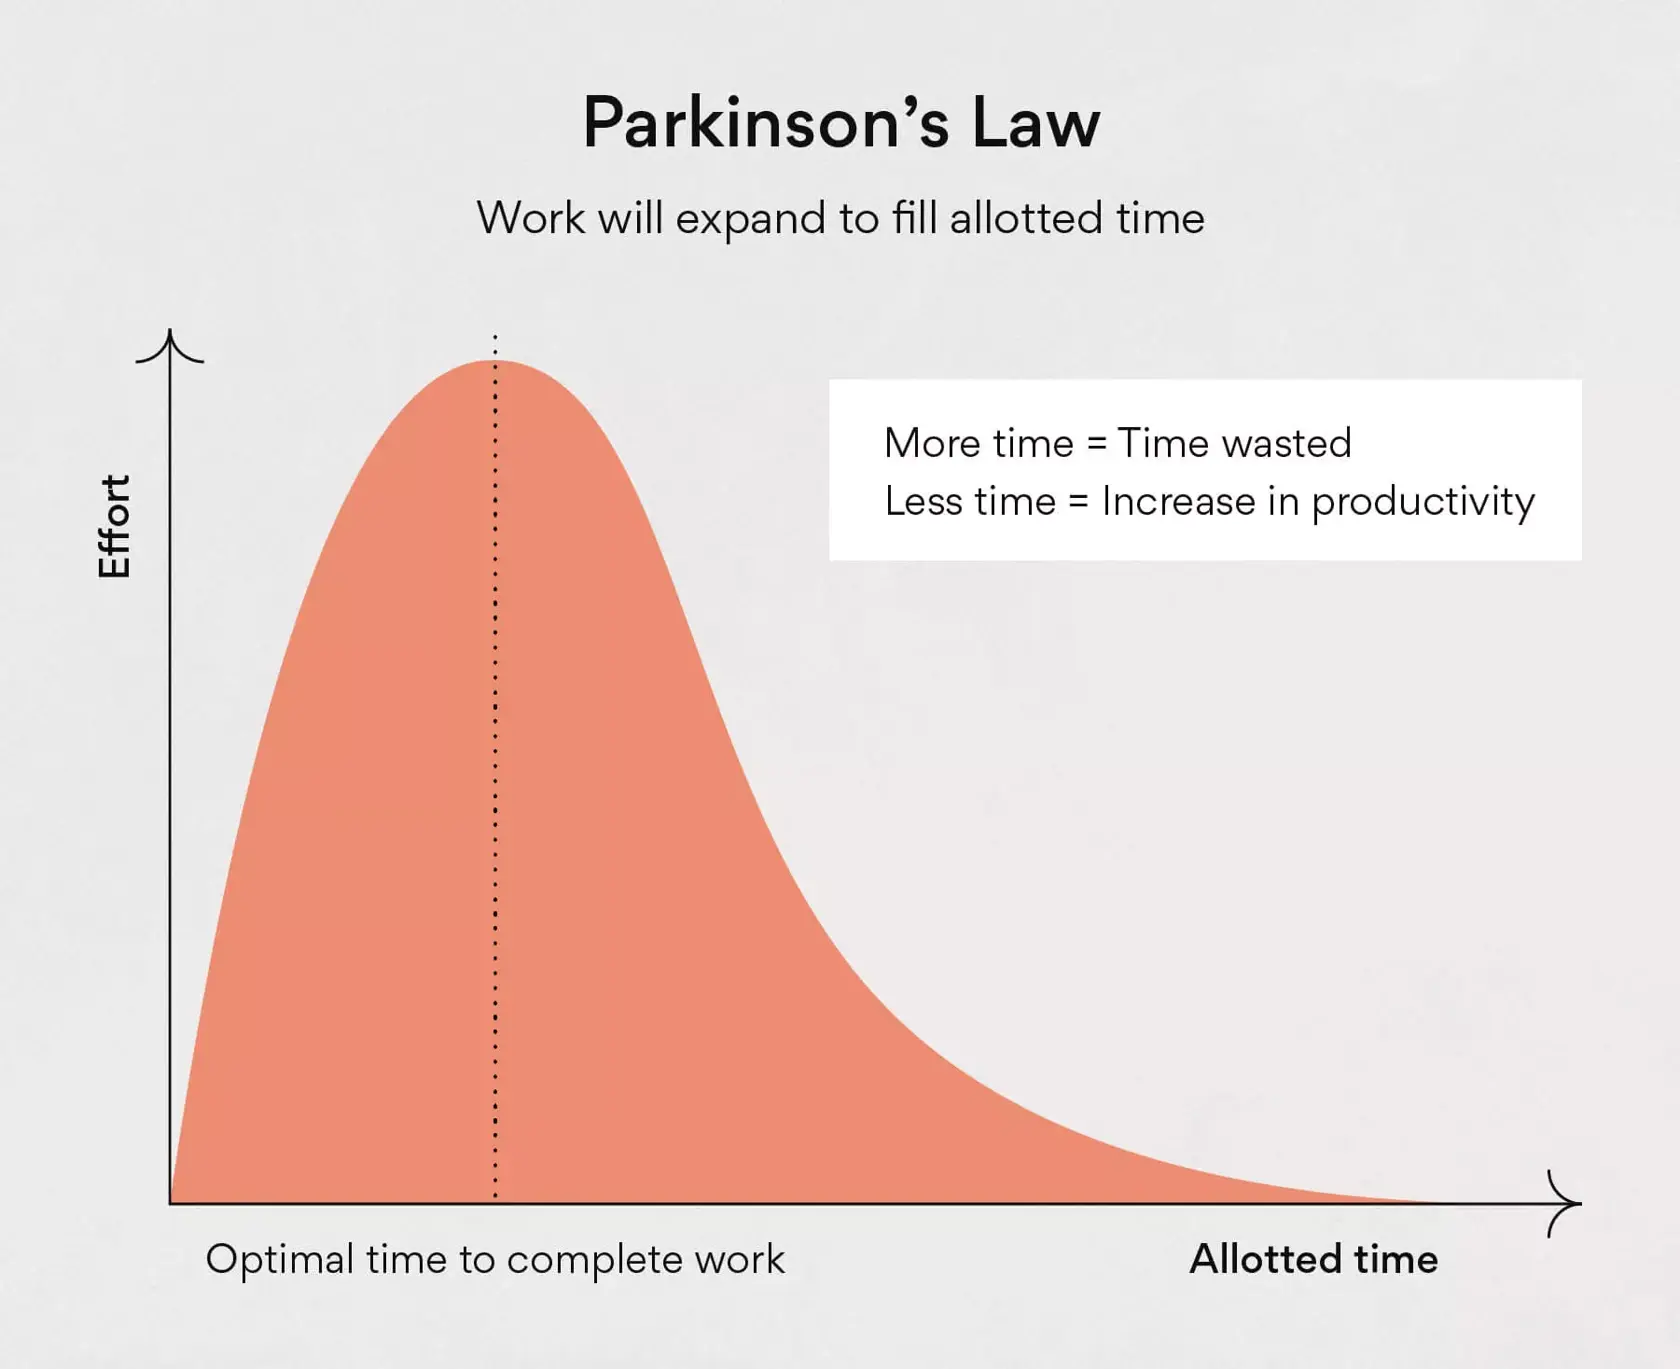 為什麼工作會延伸到填滿可用的時間？